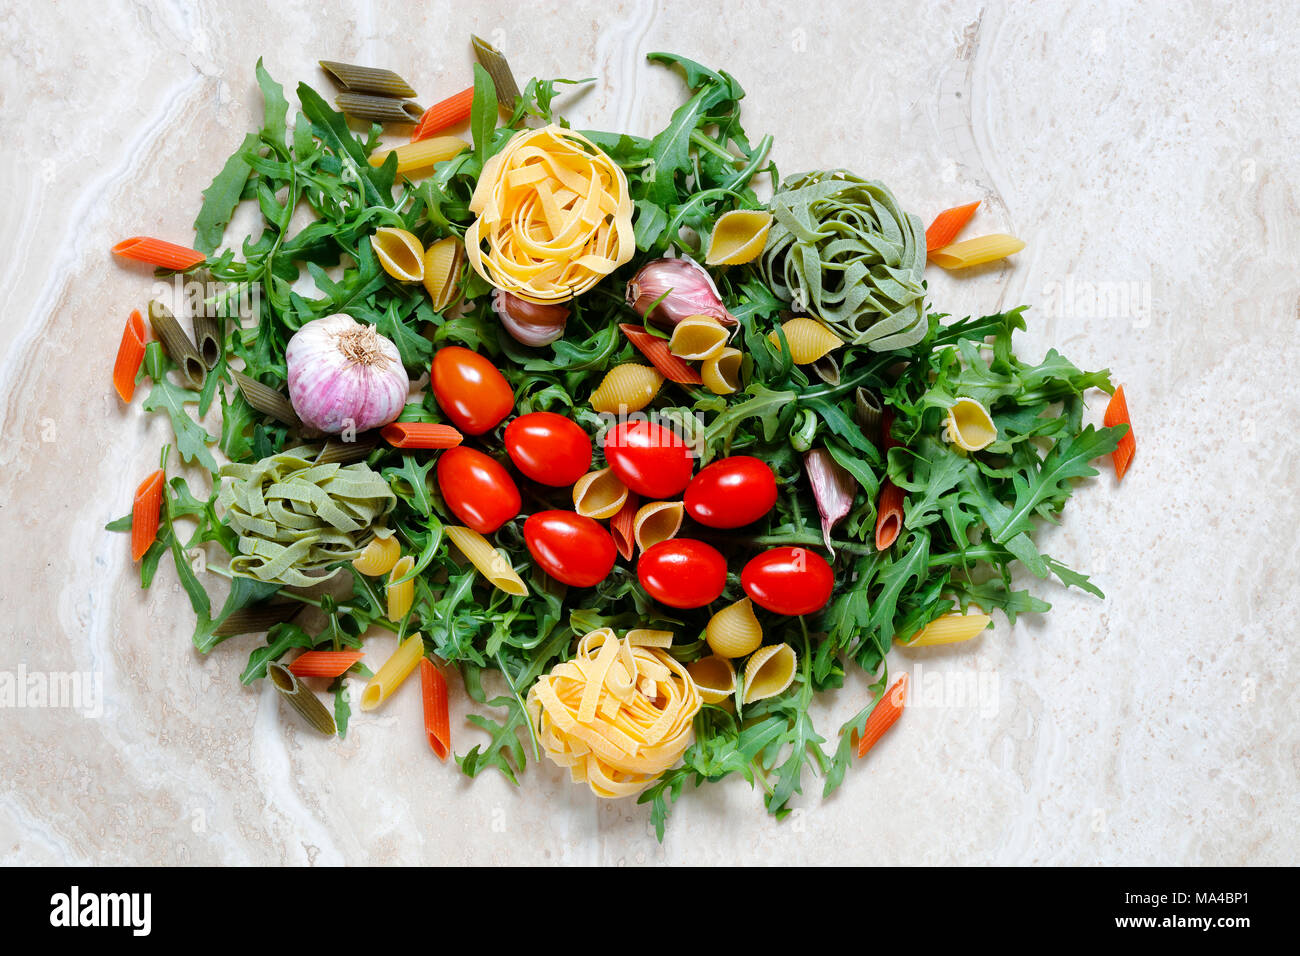 Rucola Rucola mit Pflaumen Tomaten und Knoblauch mit Tagliatelle und Penne Pasta tricolore Zutaten für italienische Küche auf Marmor tisch Stockfoto